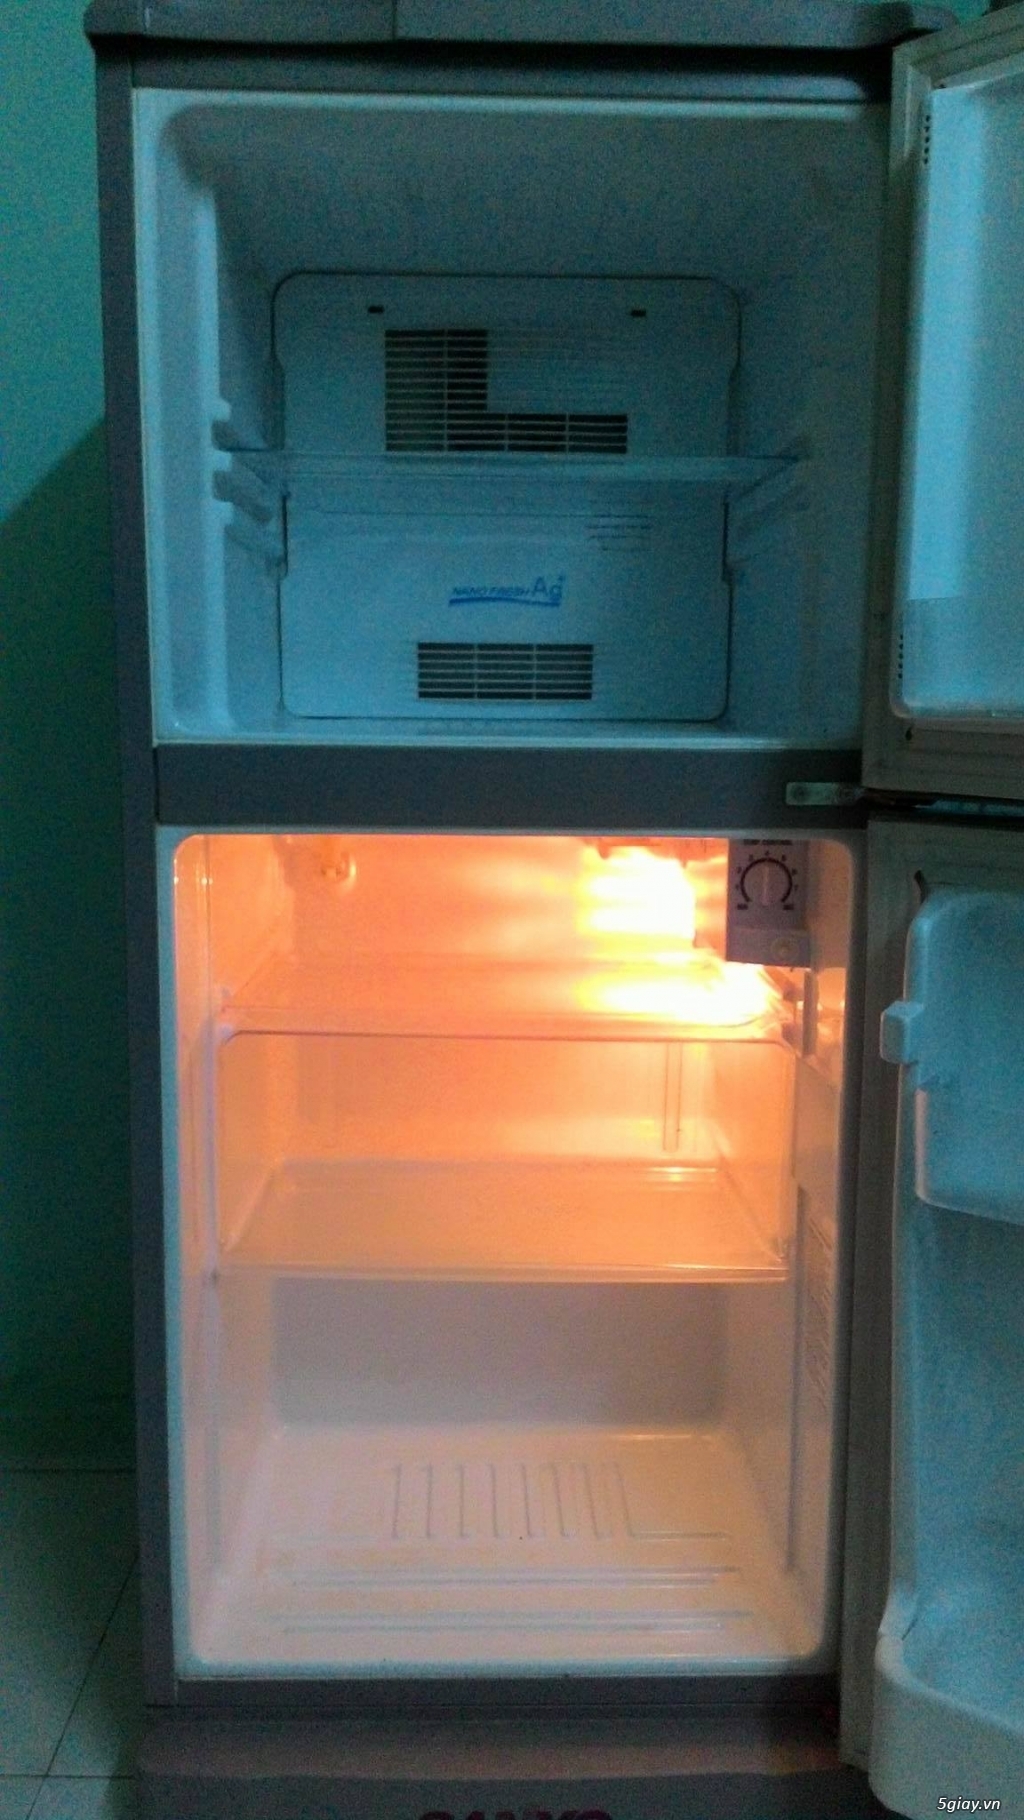 bán tủ lạnh sanyo 110l - 1